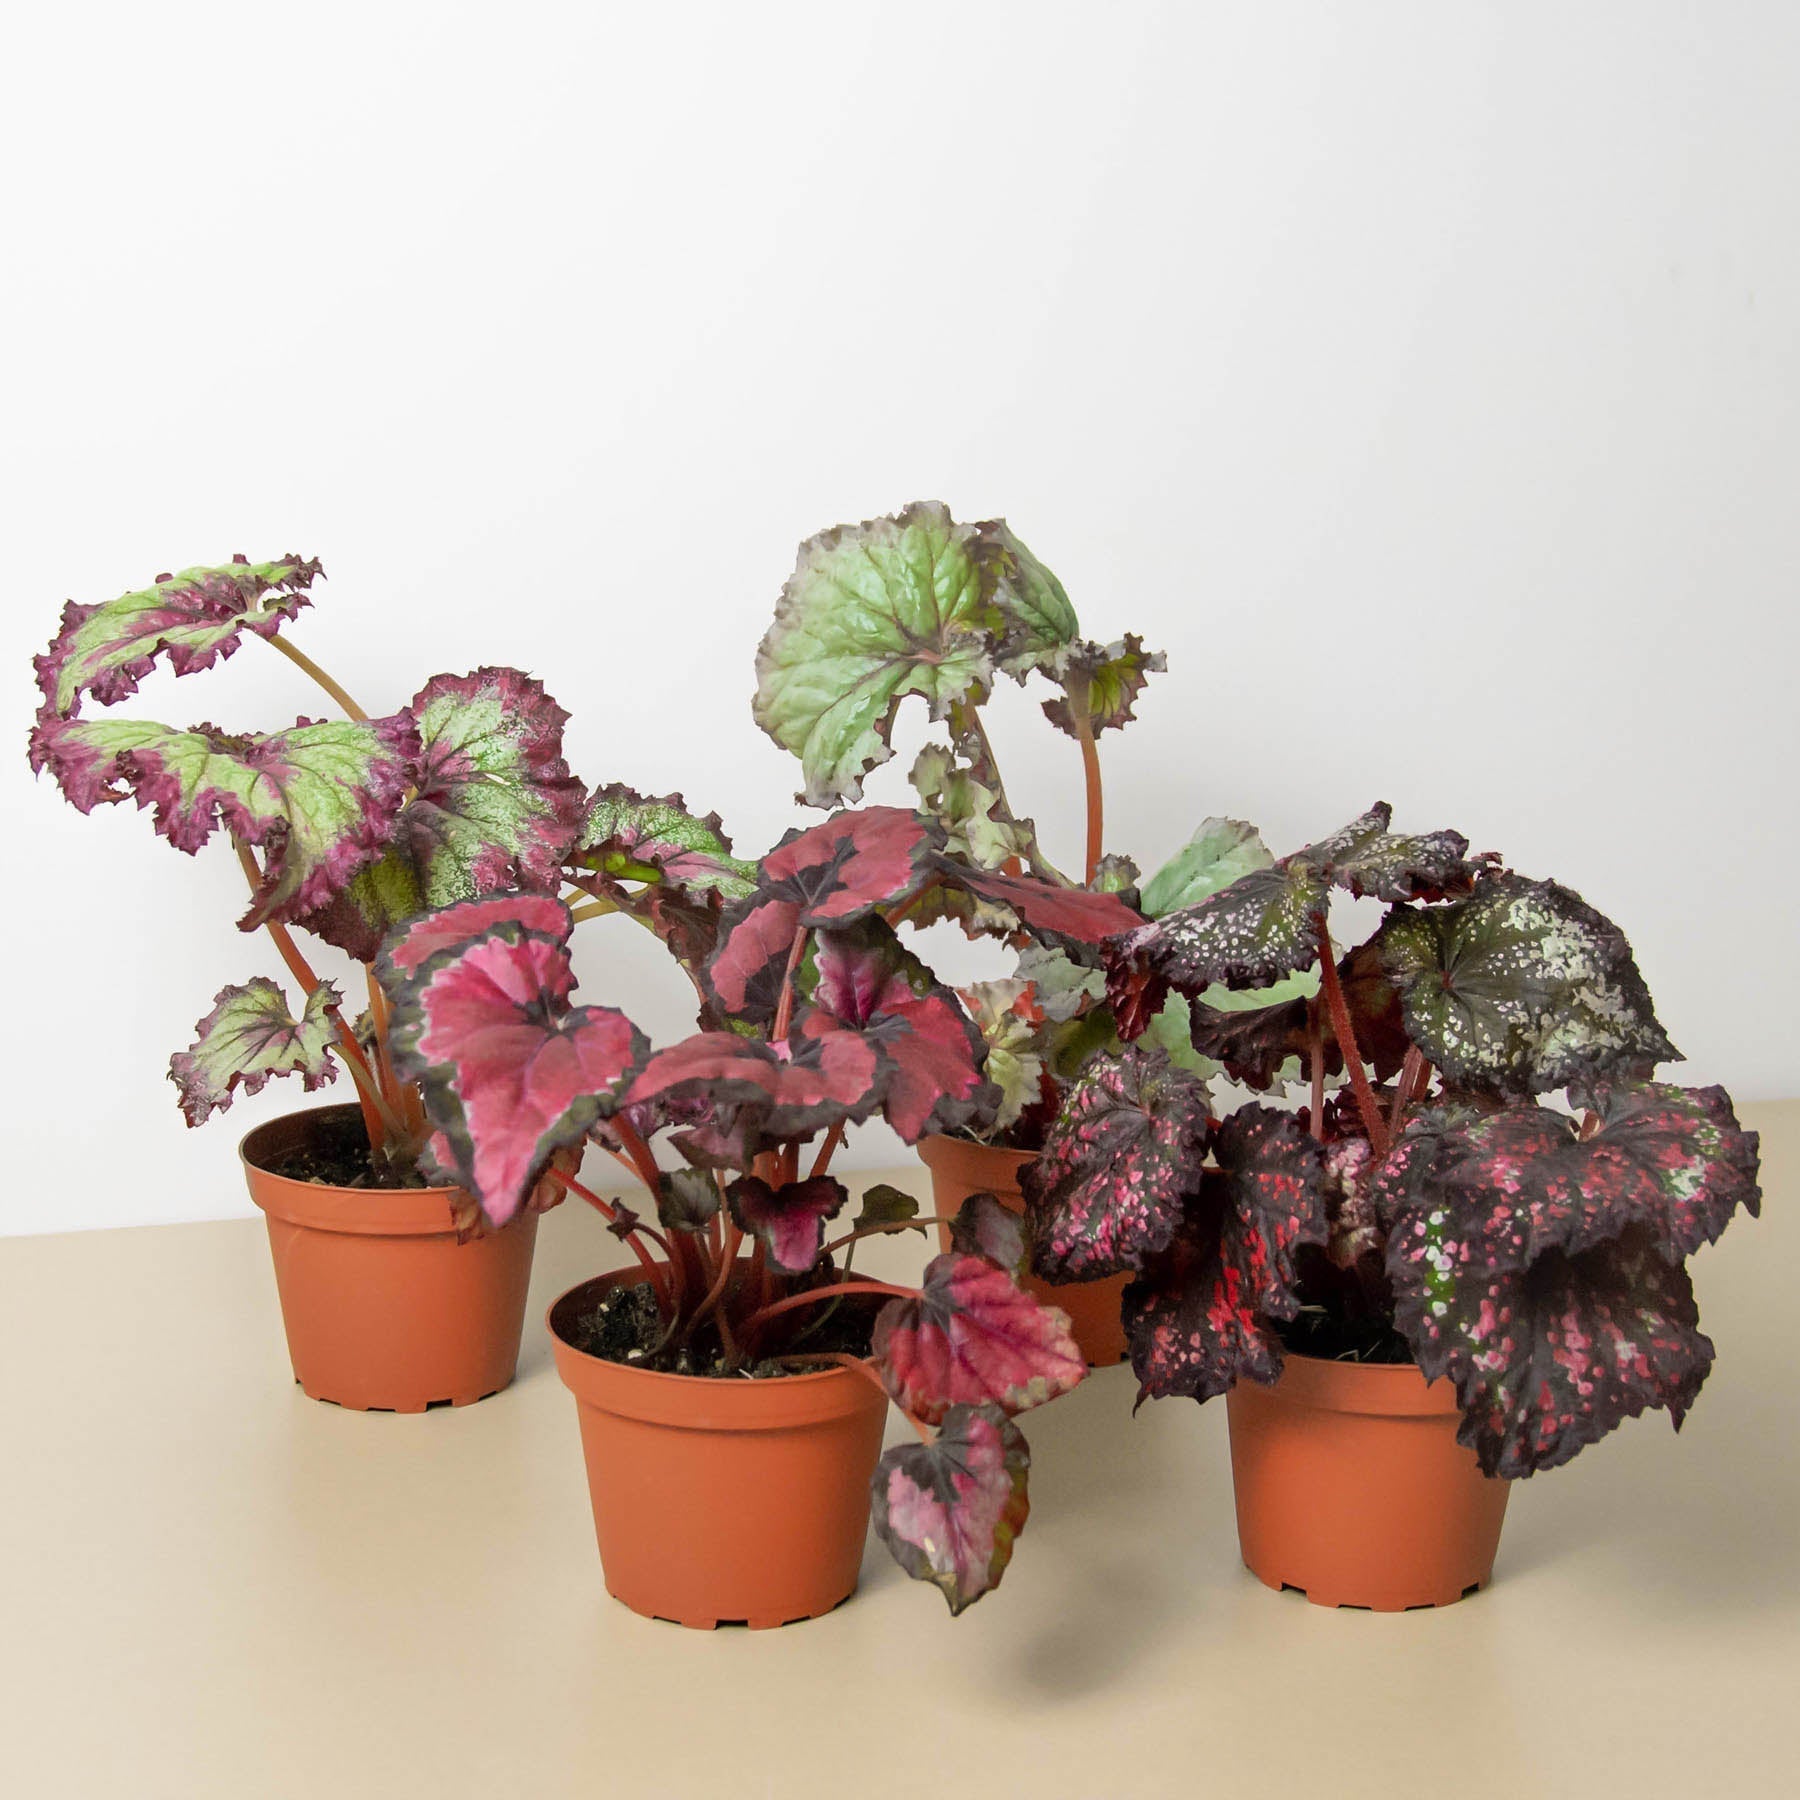 Begonia 'Rex' - 4 Pack Variety - One Beleaf Away Plant Studio